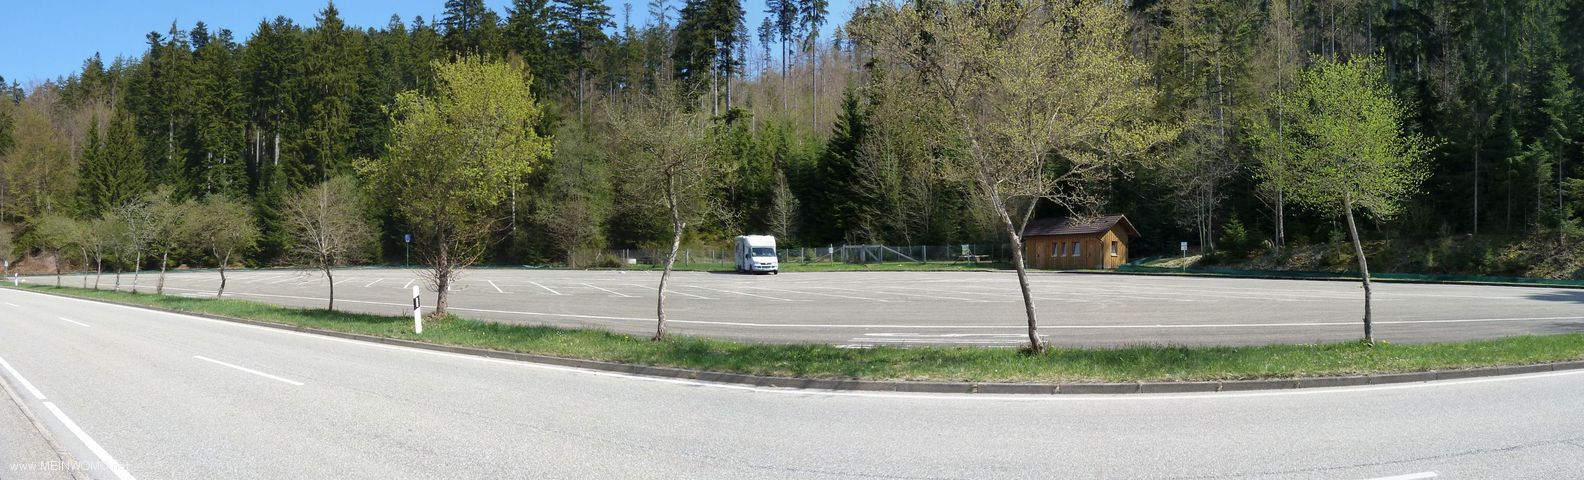  Parking space at Nagold reservoir